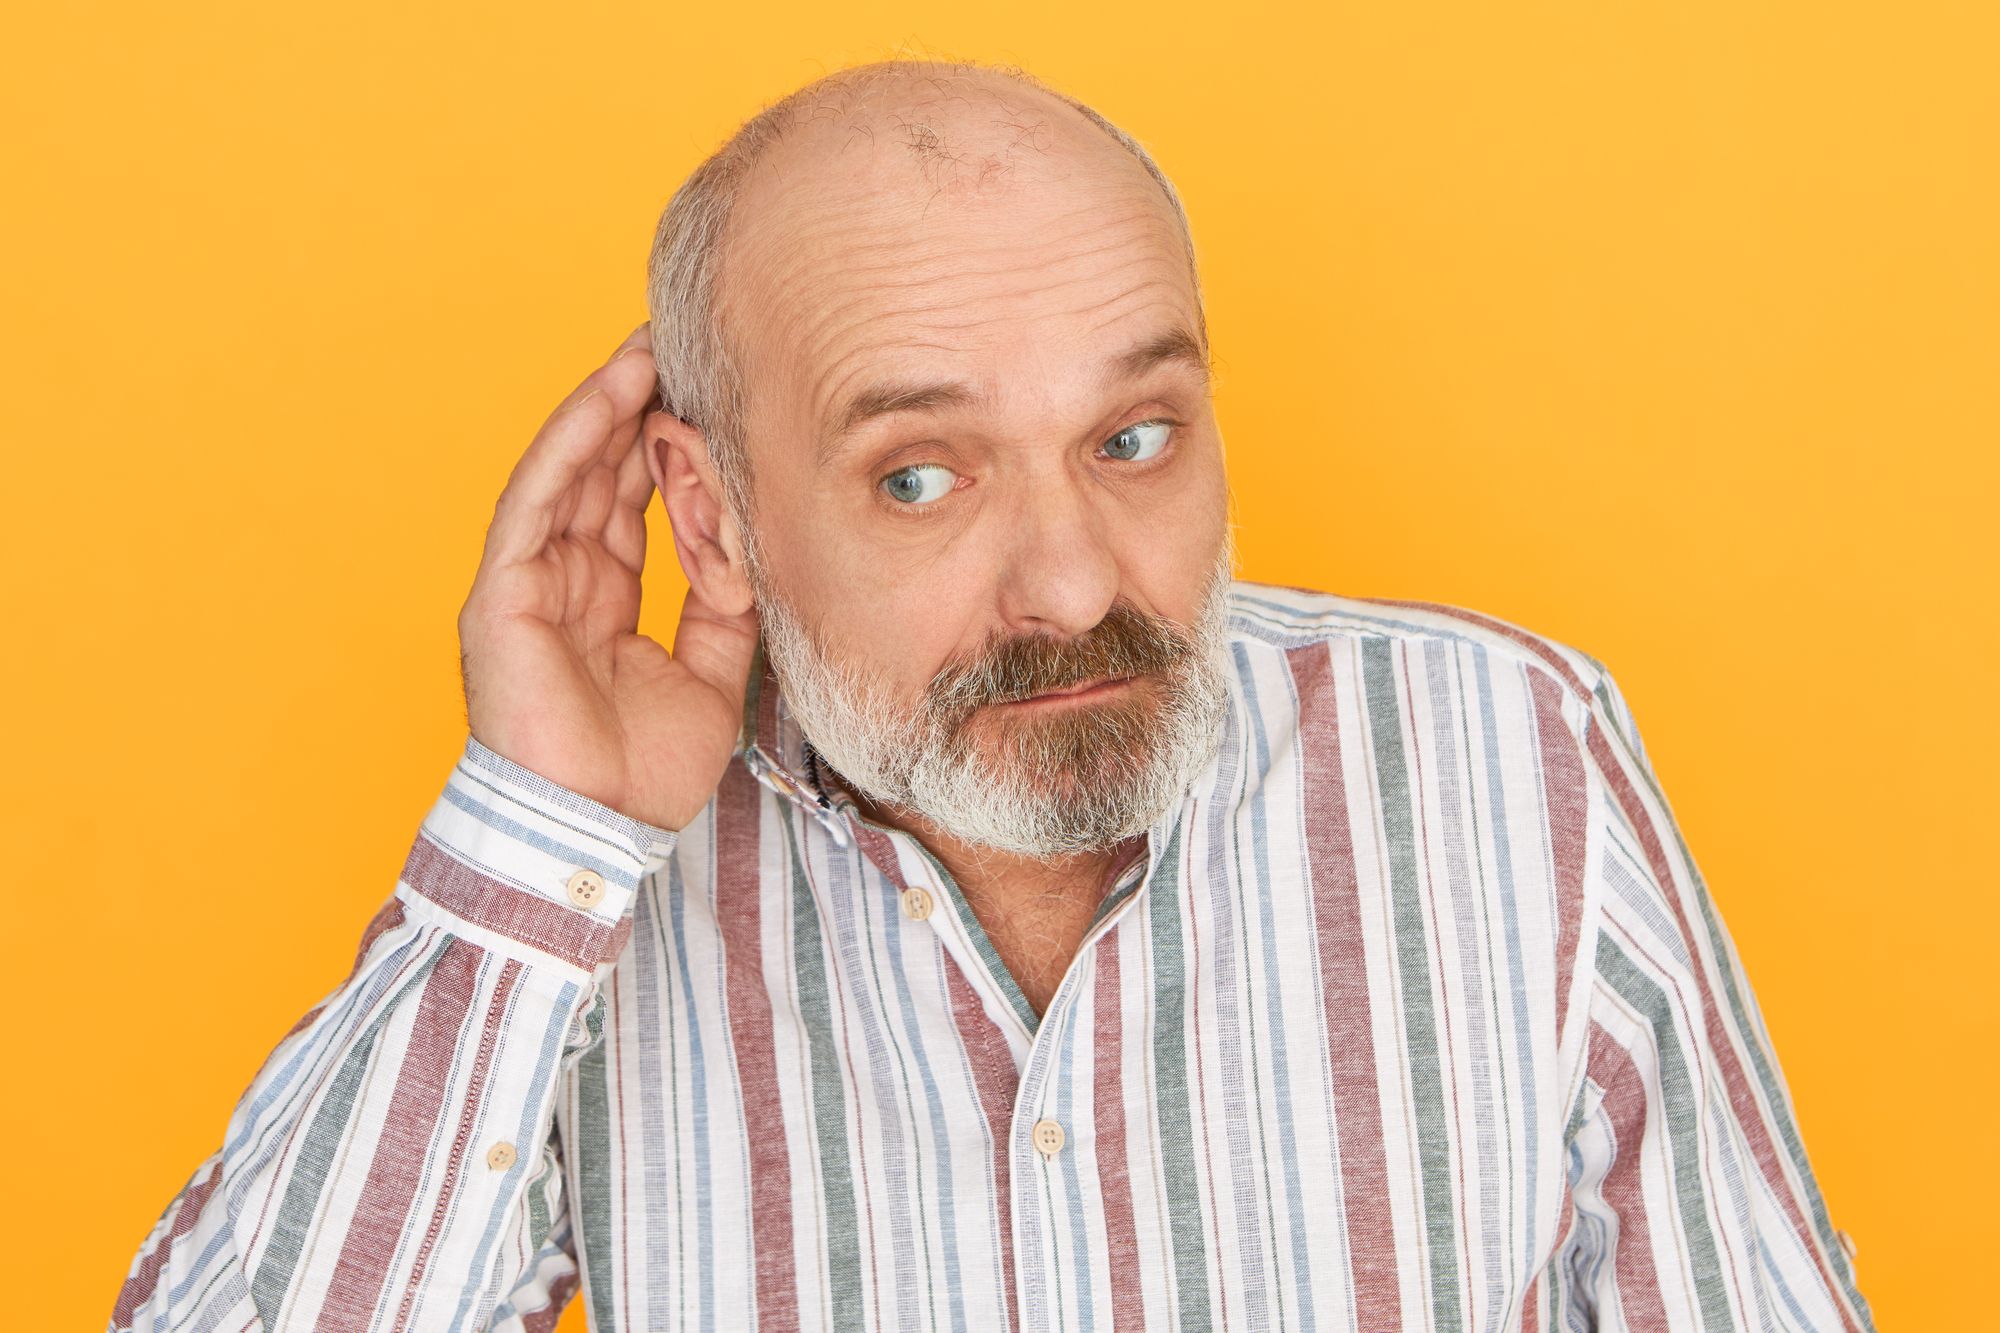 3 causas da perda auditiva